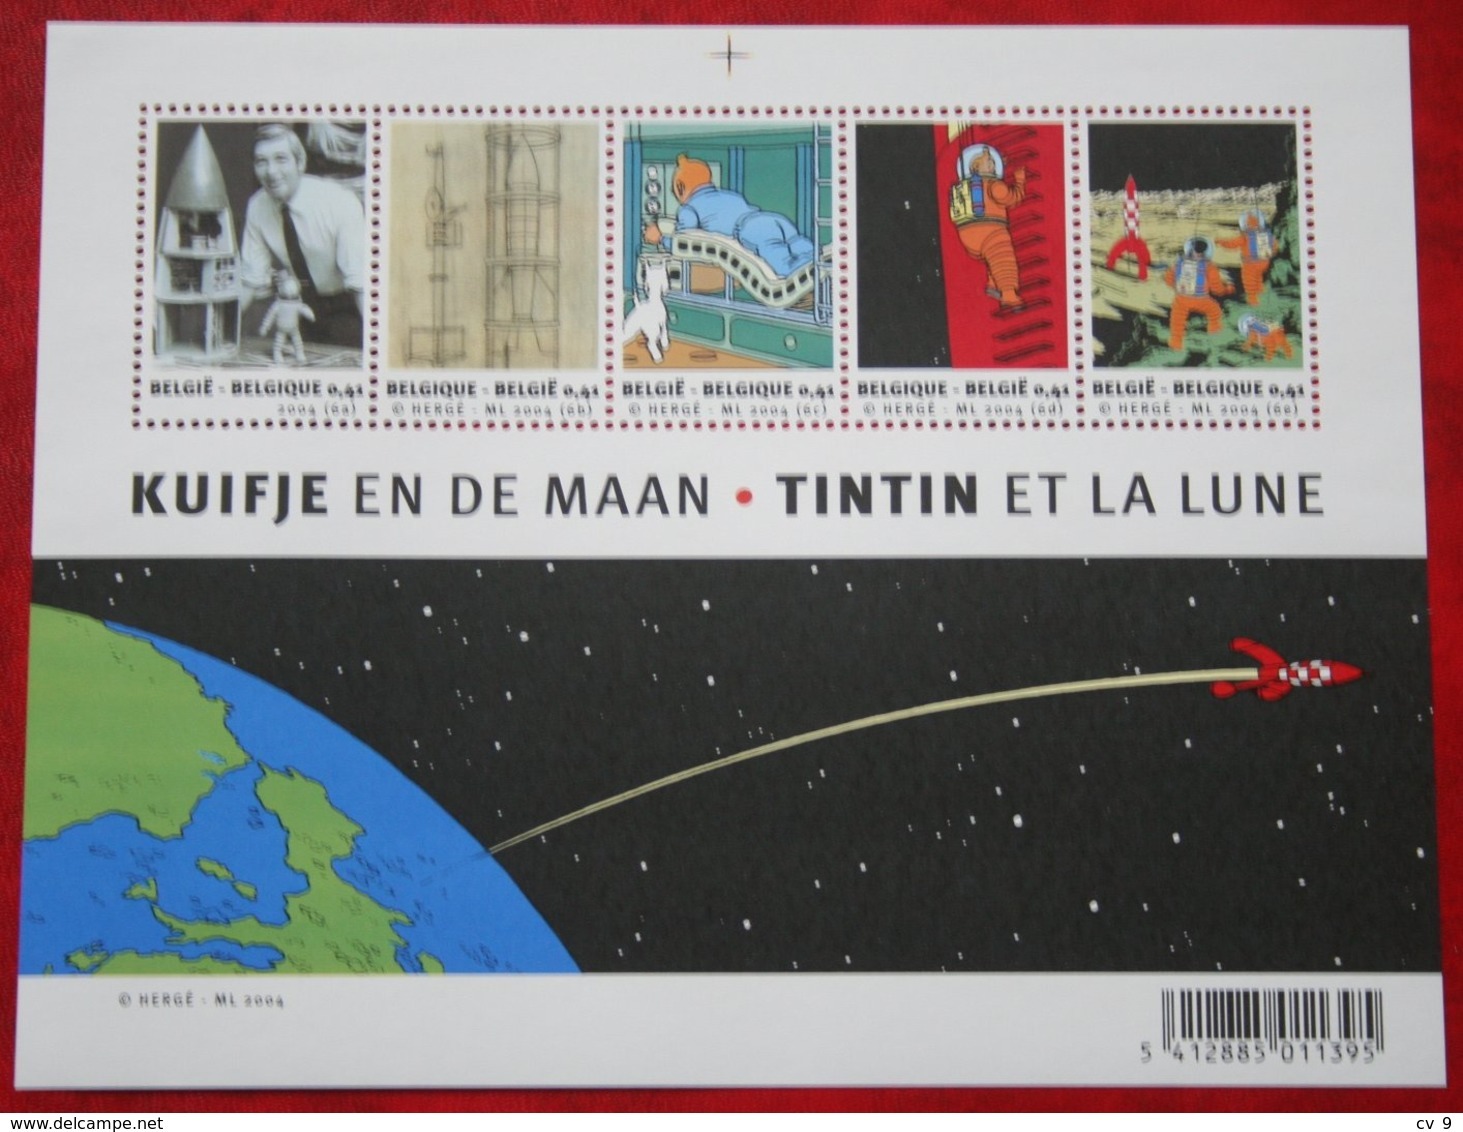 Kuifje Tin Tin Moon Space OBC N° 3249-3253 109 (Mi 3298-3302 Bl 93) 2004 POSTFRIS MNH ** BELGIE BELGIEN / BELGIUM - Unused Stamps